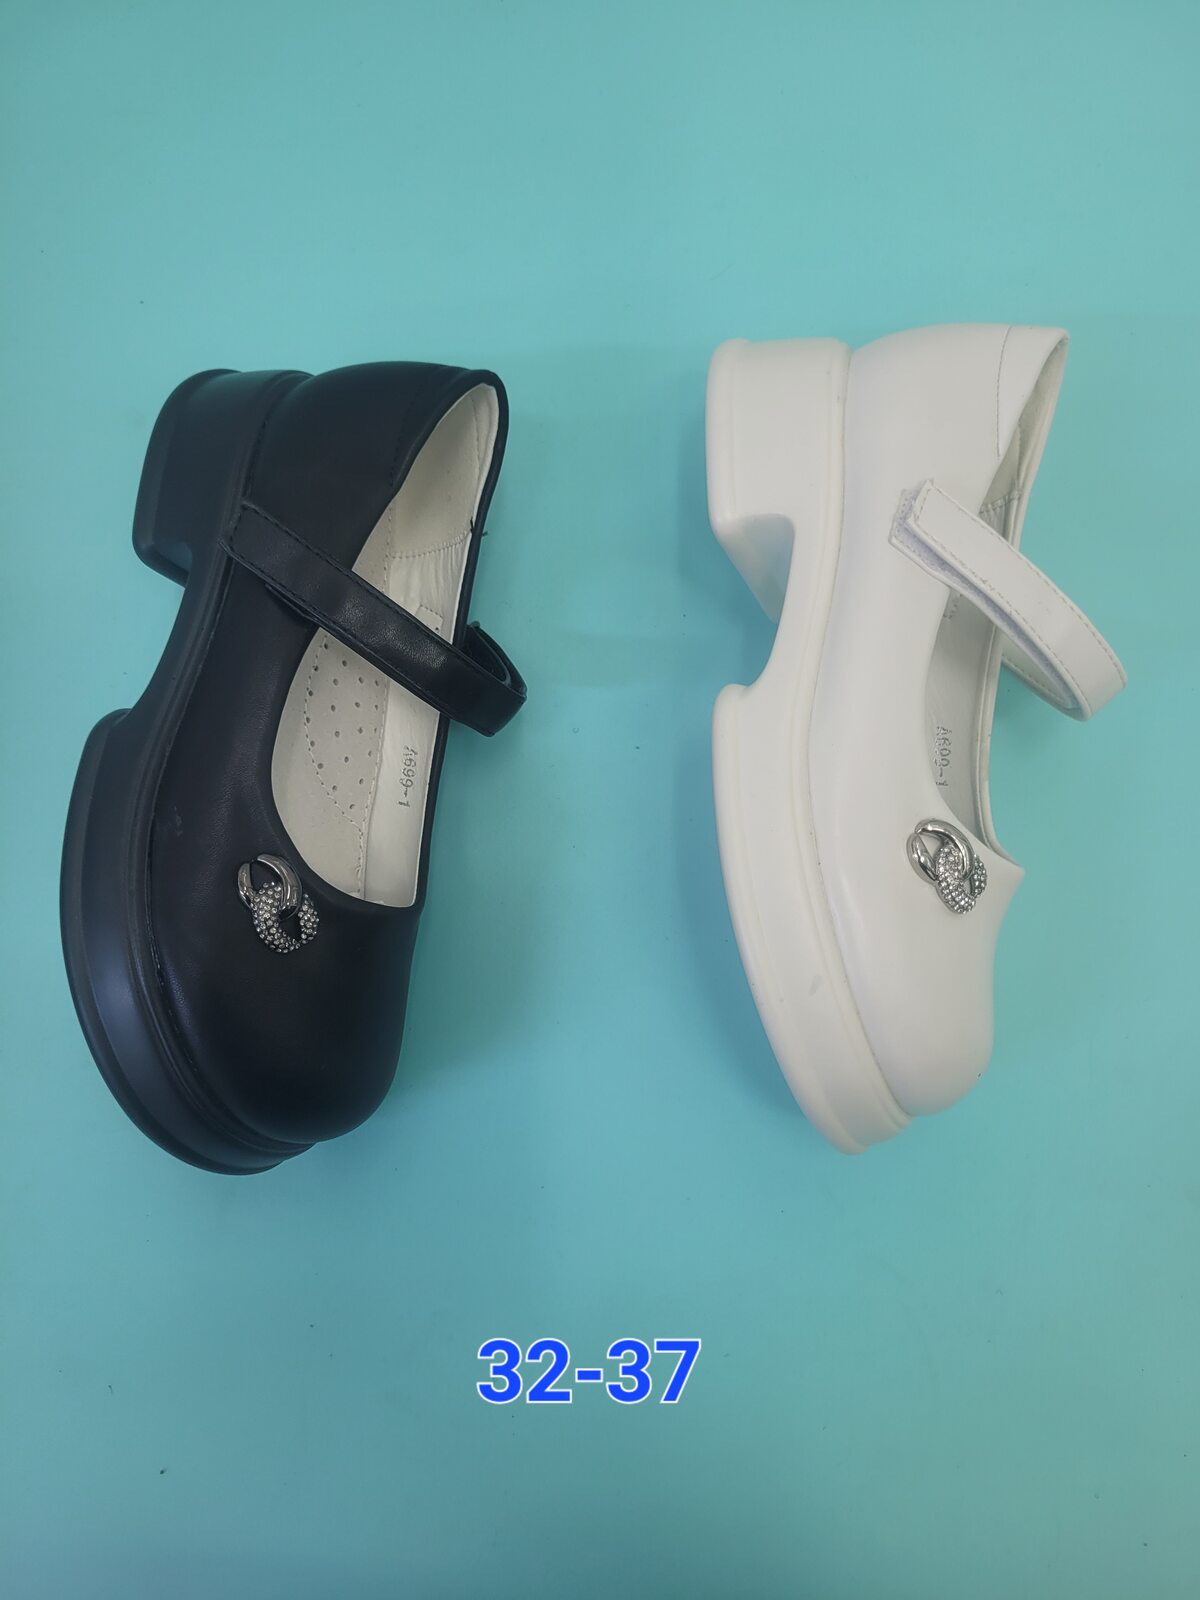 Школьная форма, подростковые туфли арт.482204